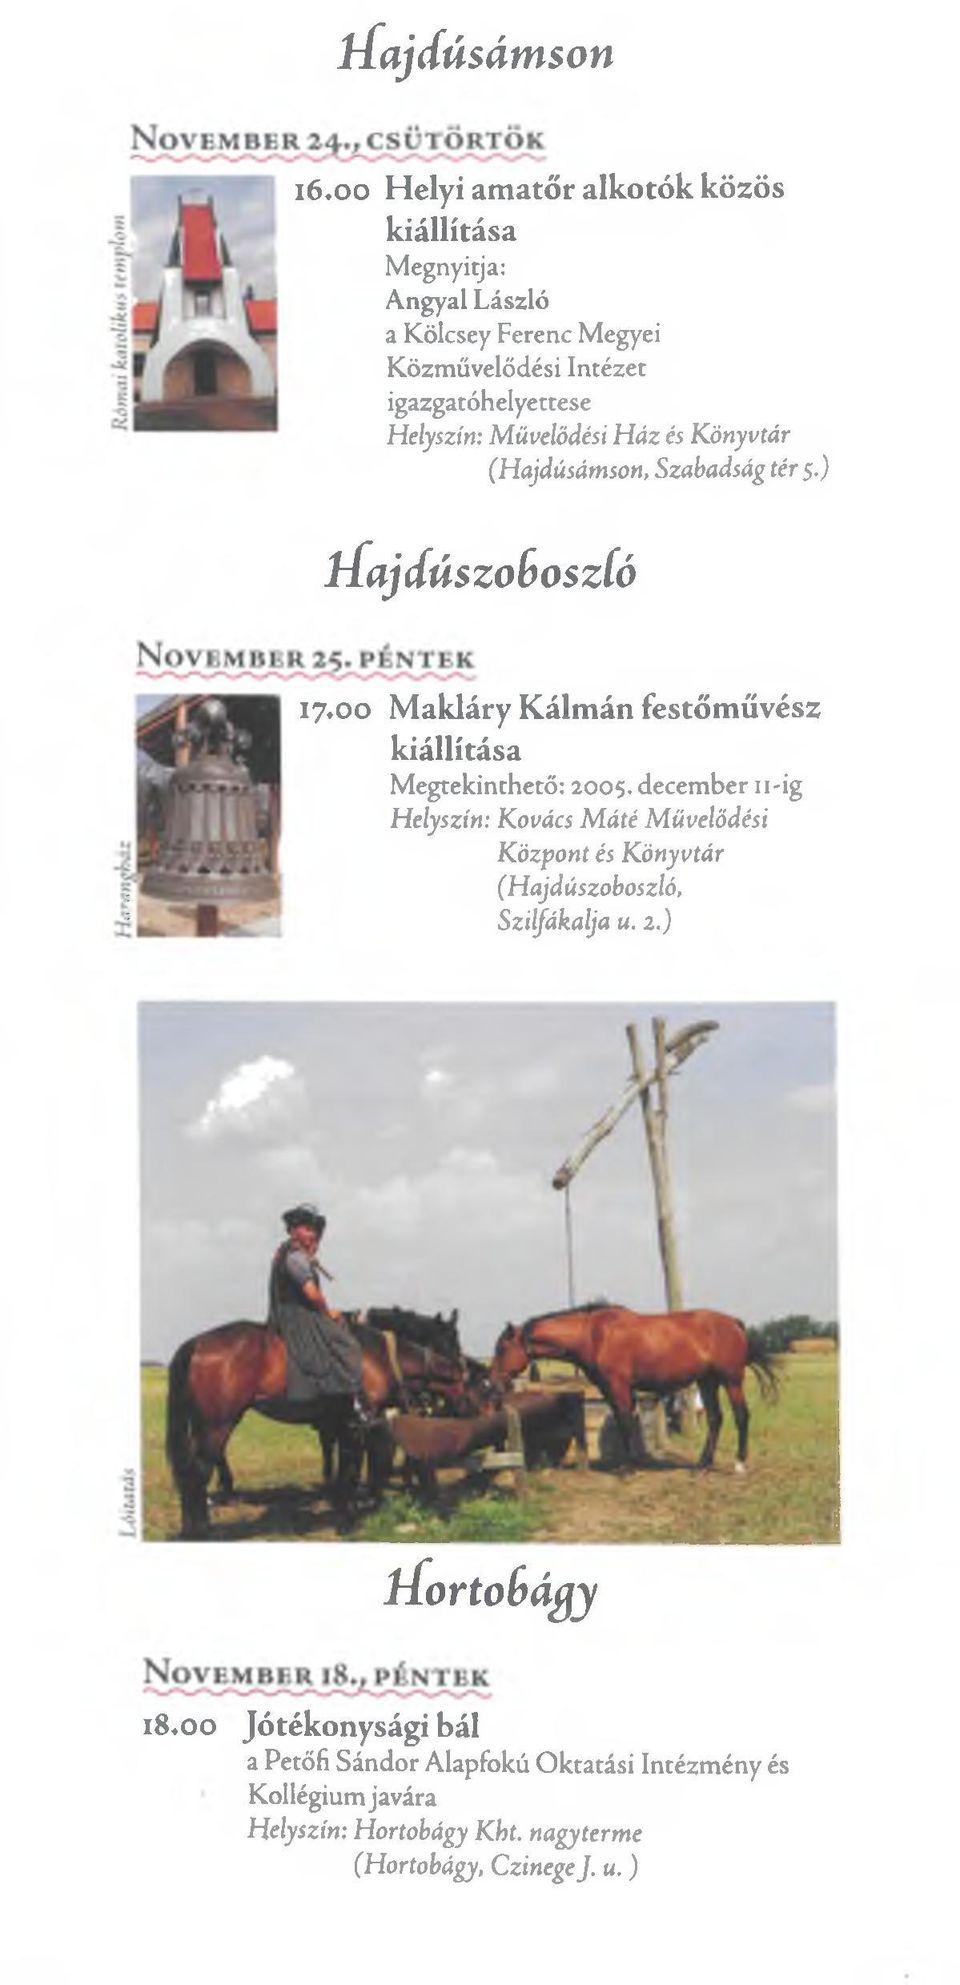 ) H ajdúszoboszló 17*00 Makláry Kálmán festőművész kiállítása Megtekinthető: 2005.